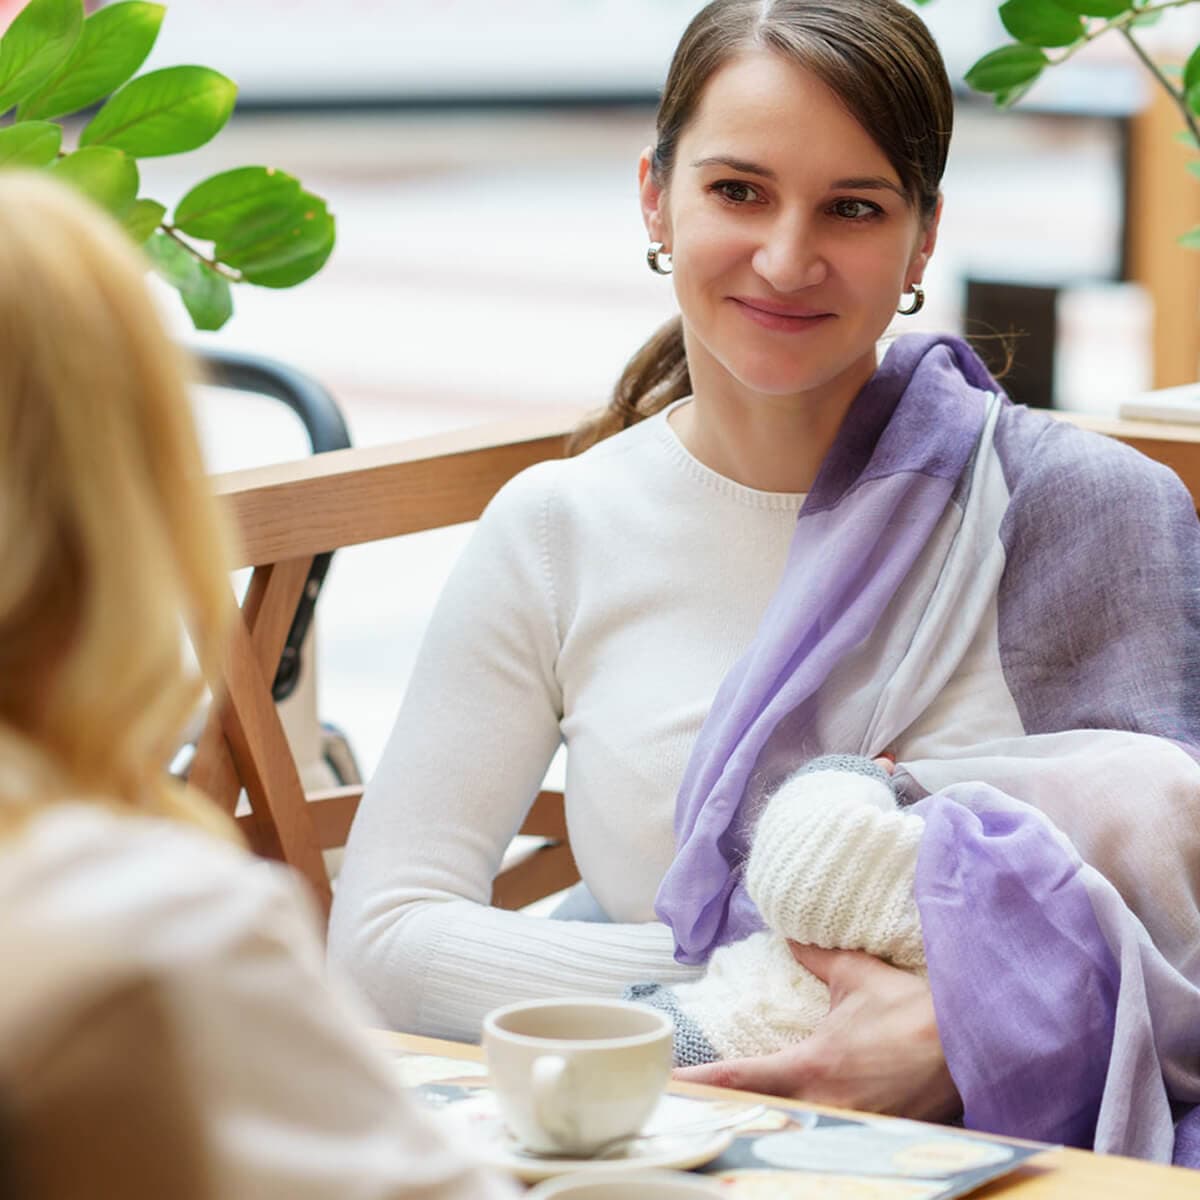 شیر دادن به نوزاد در مکان عمومی – سوالات متداول